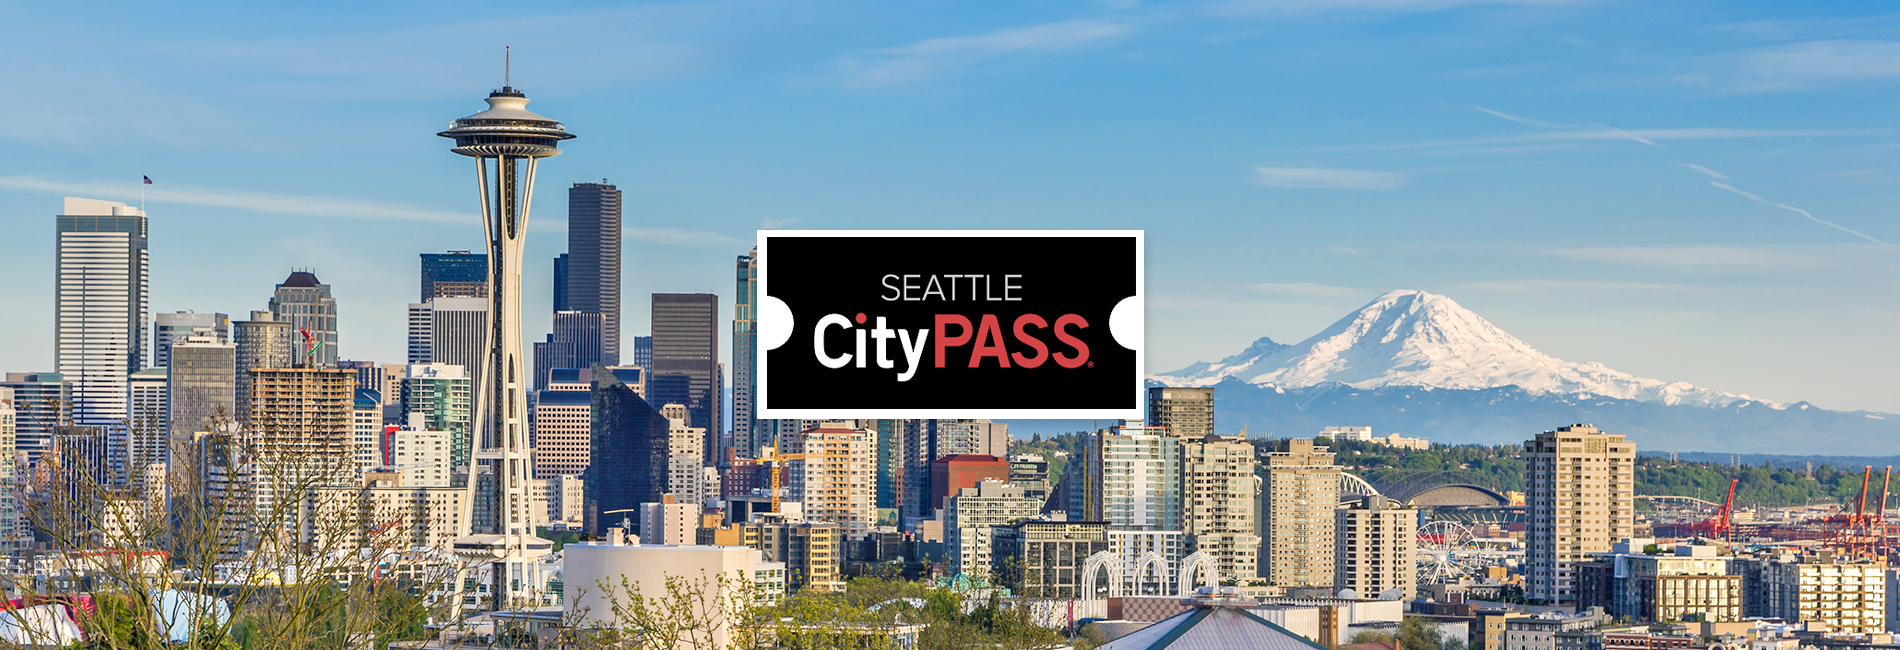 【【任選五大西雅圖必去景點】西雅圖城市通行證 SEATTLE CityPASS